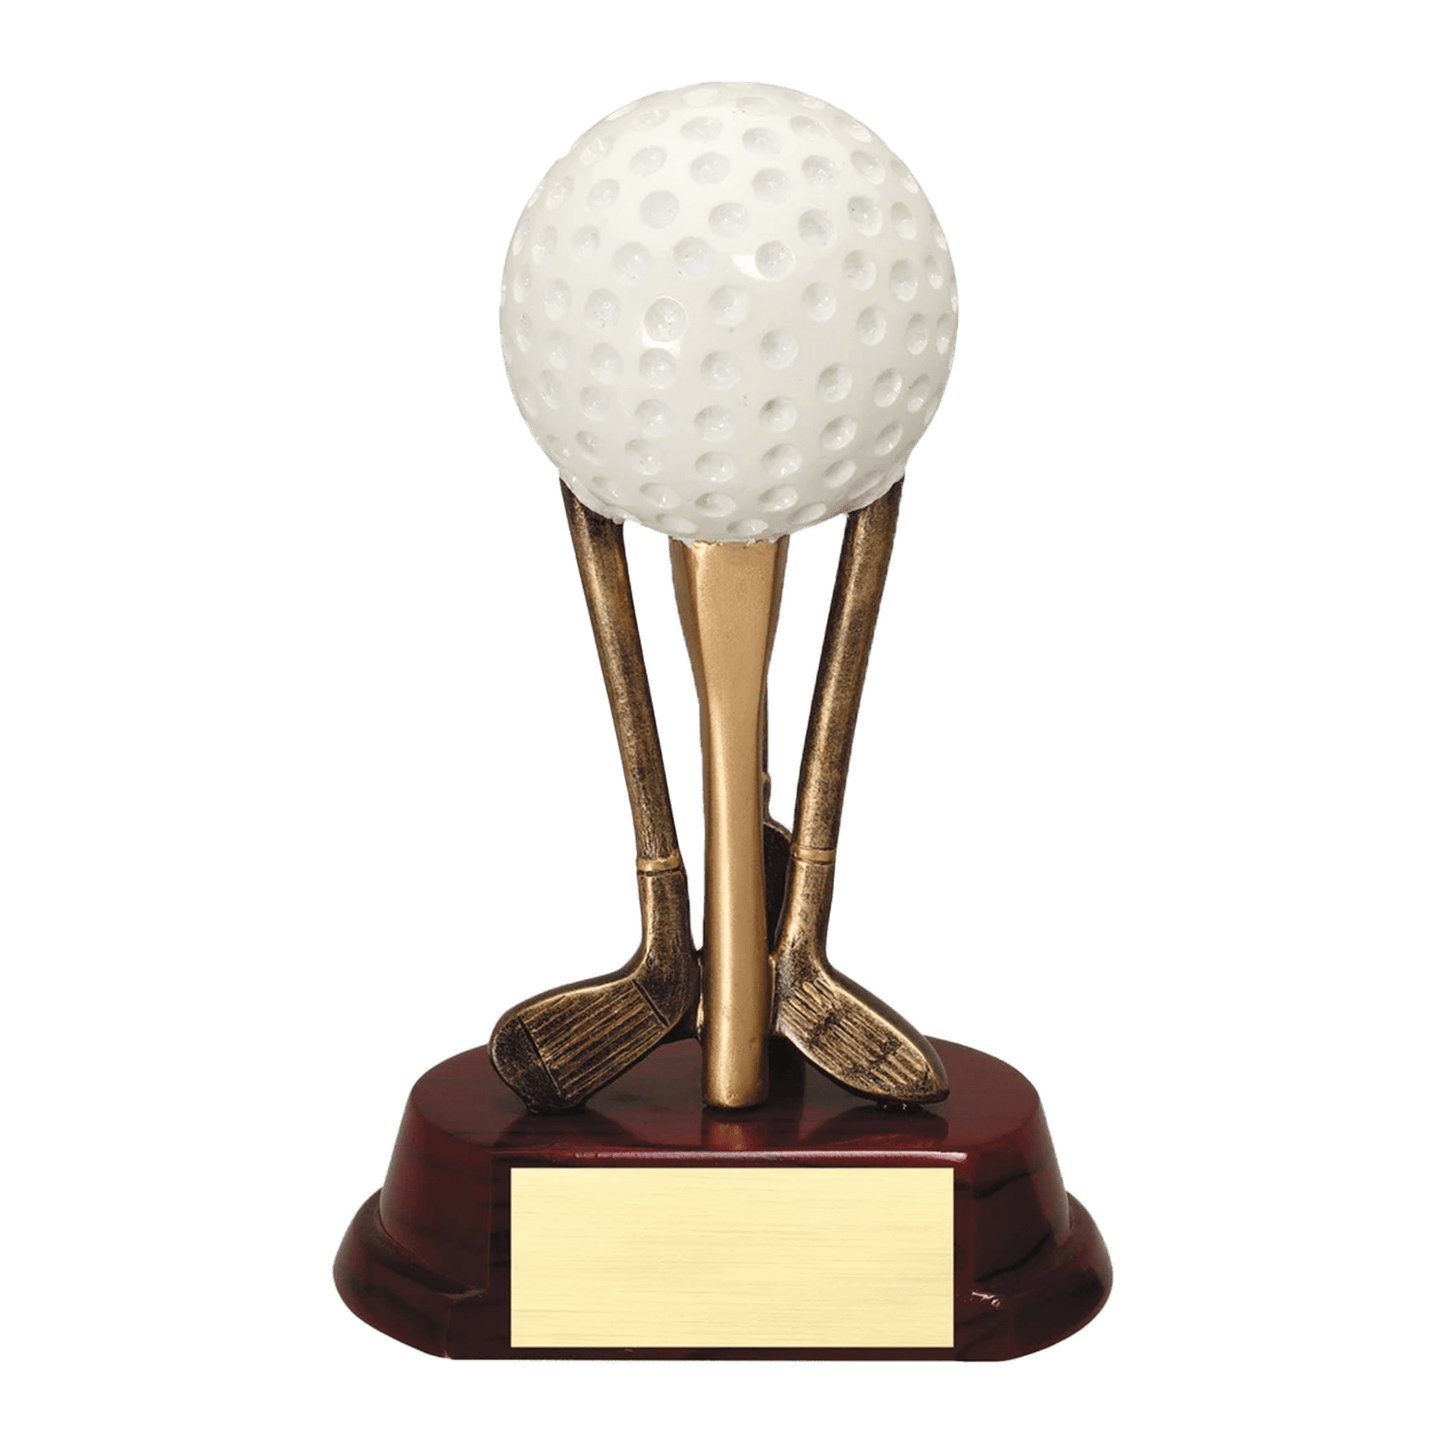 Golf Ball on Clubs Sculpture Trophy - Whoa, Jody Boy!